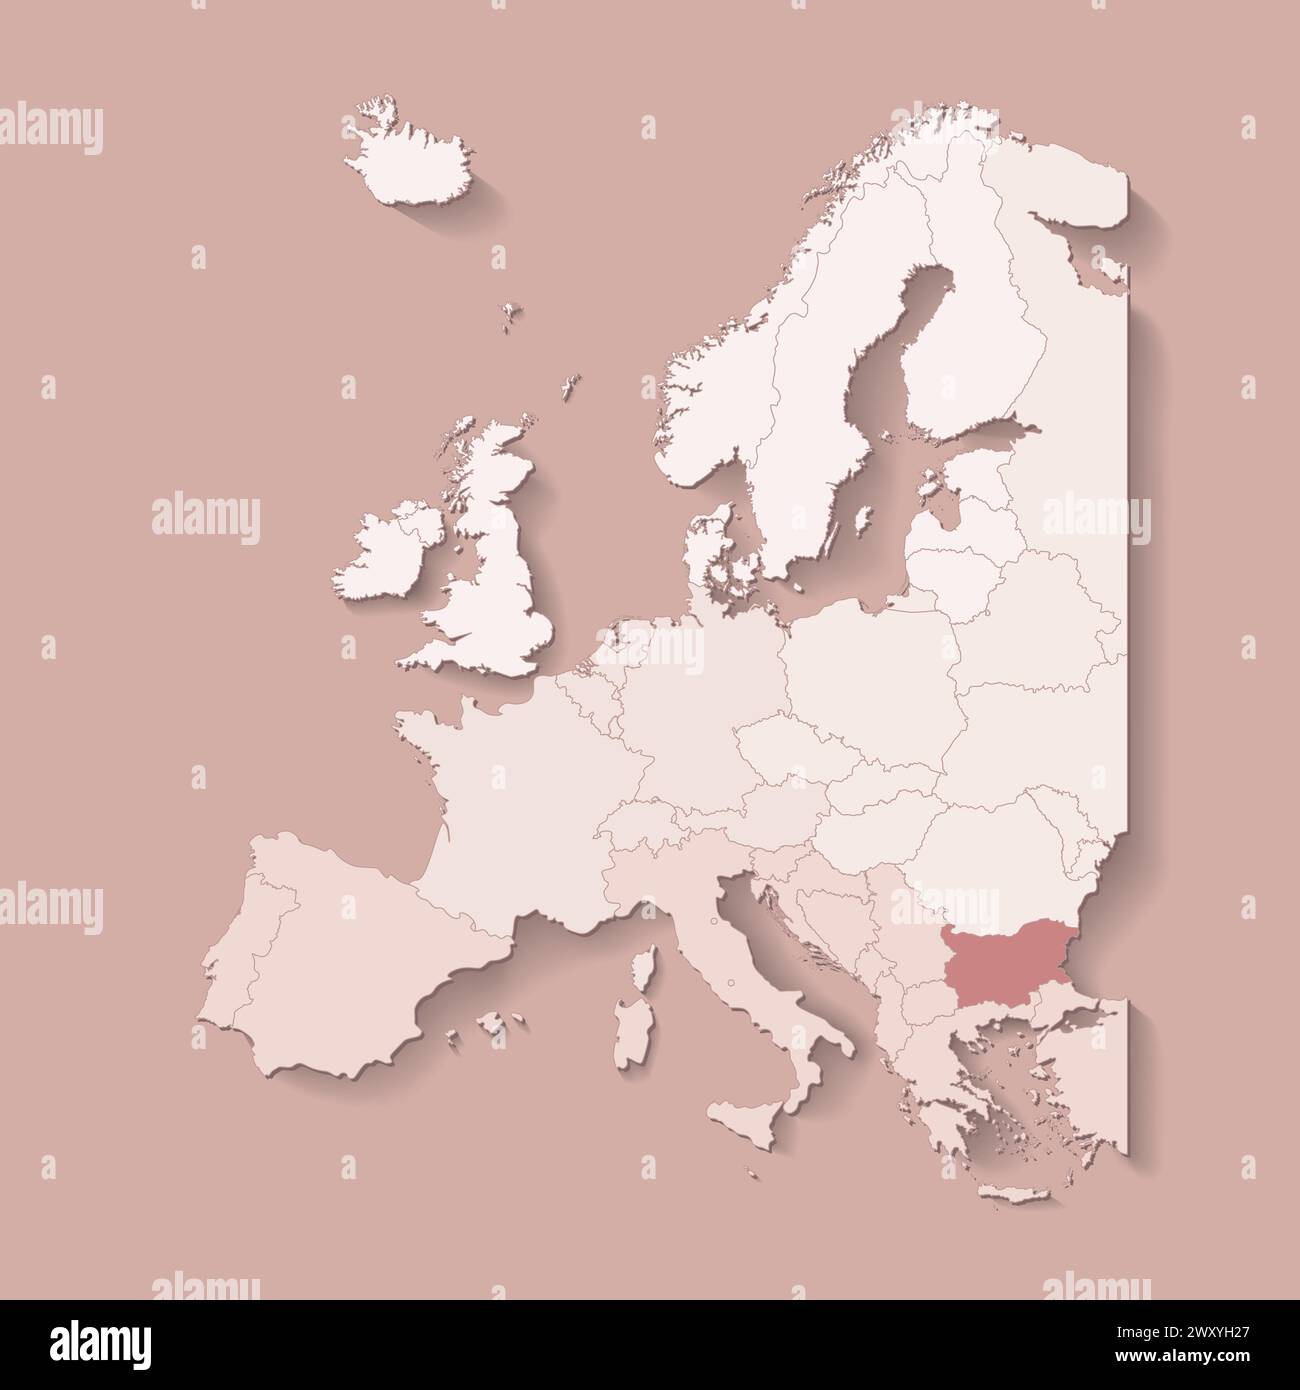 Illustrazione vettoriale con terra europea con confini di stati e paese contrassegnato Bulgaria. Mappa politica di colore marrone con occidentale, sud e così via Illustrazione Vettoriale